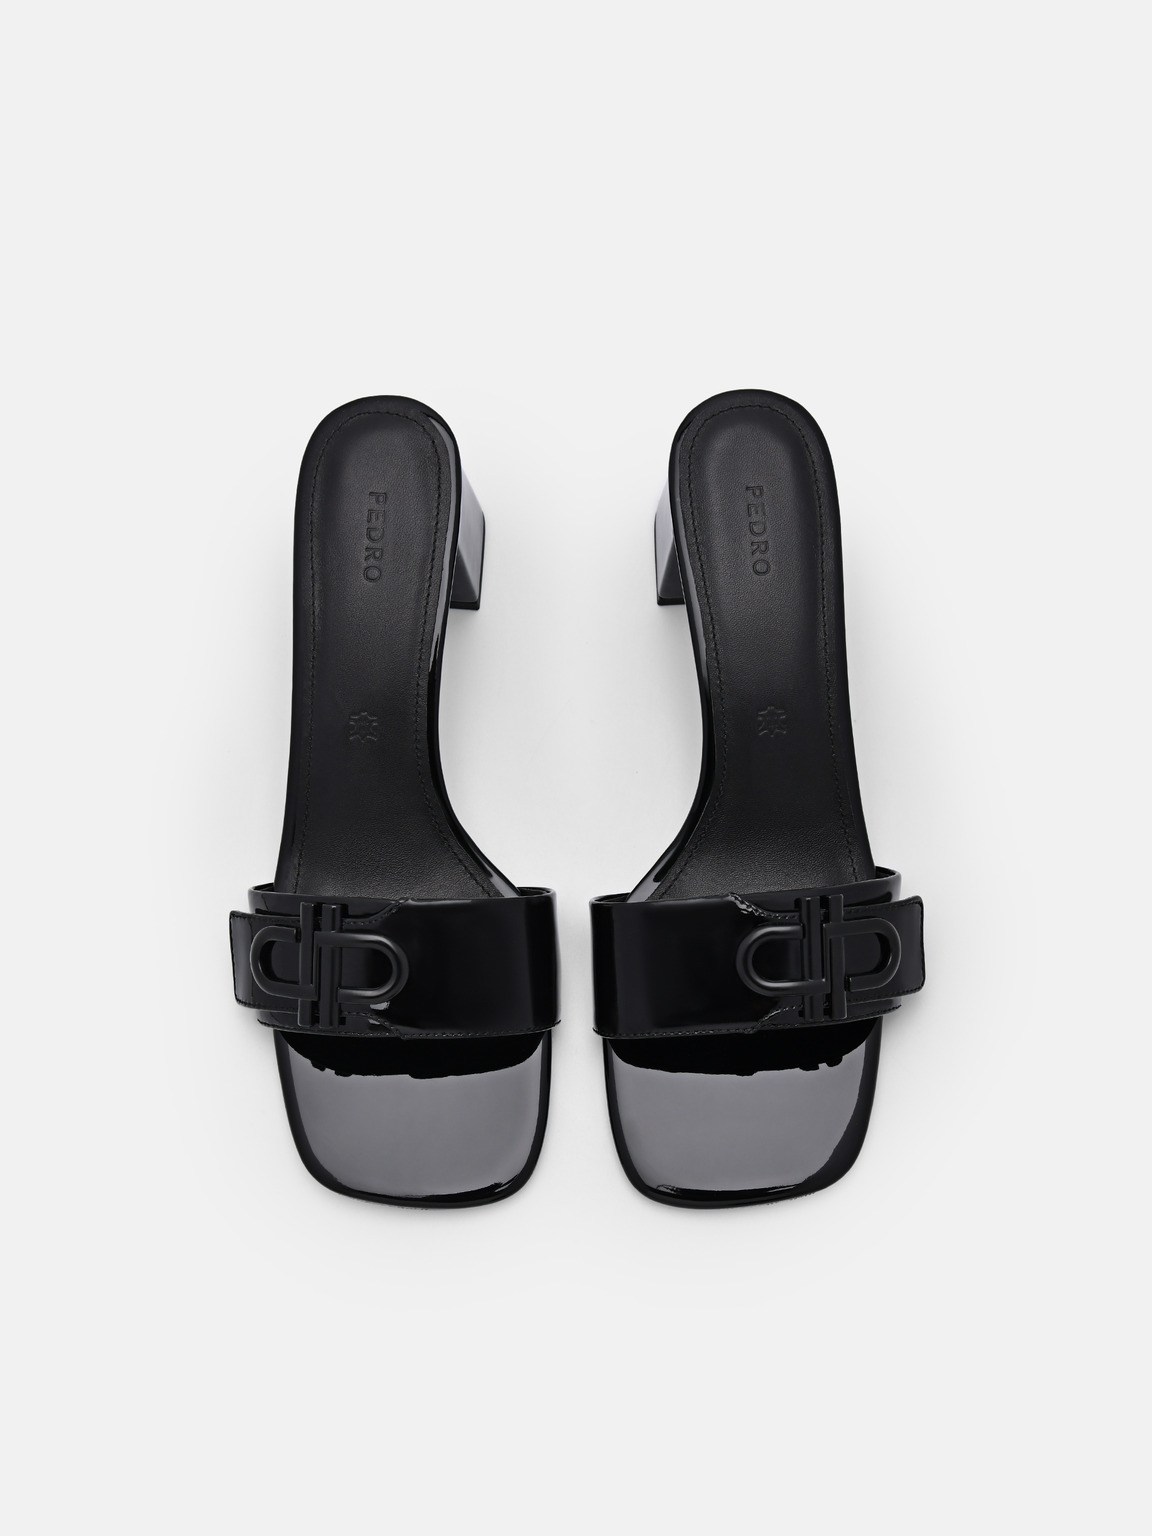 PEDRO Icon皮革高跟涼鞋, 黑色